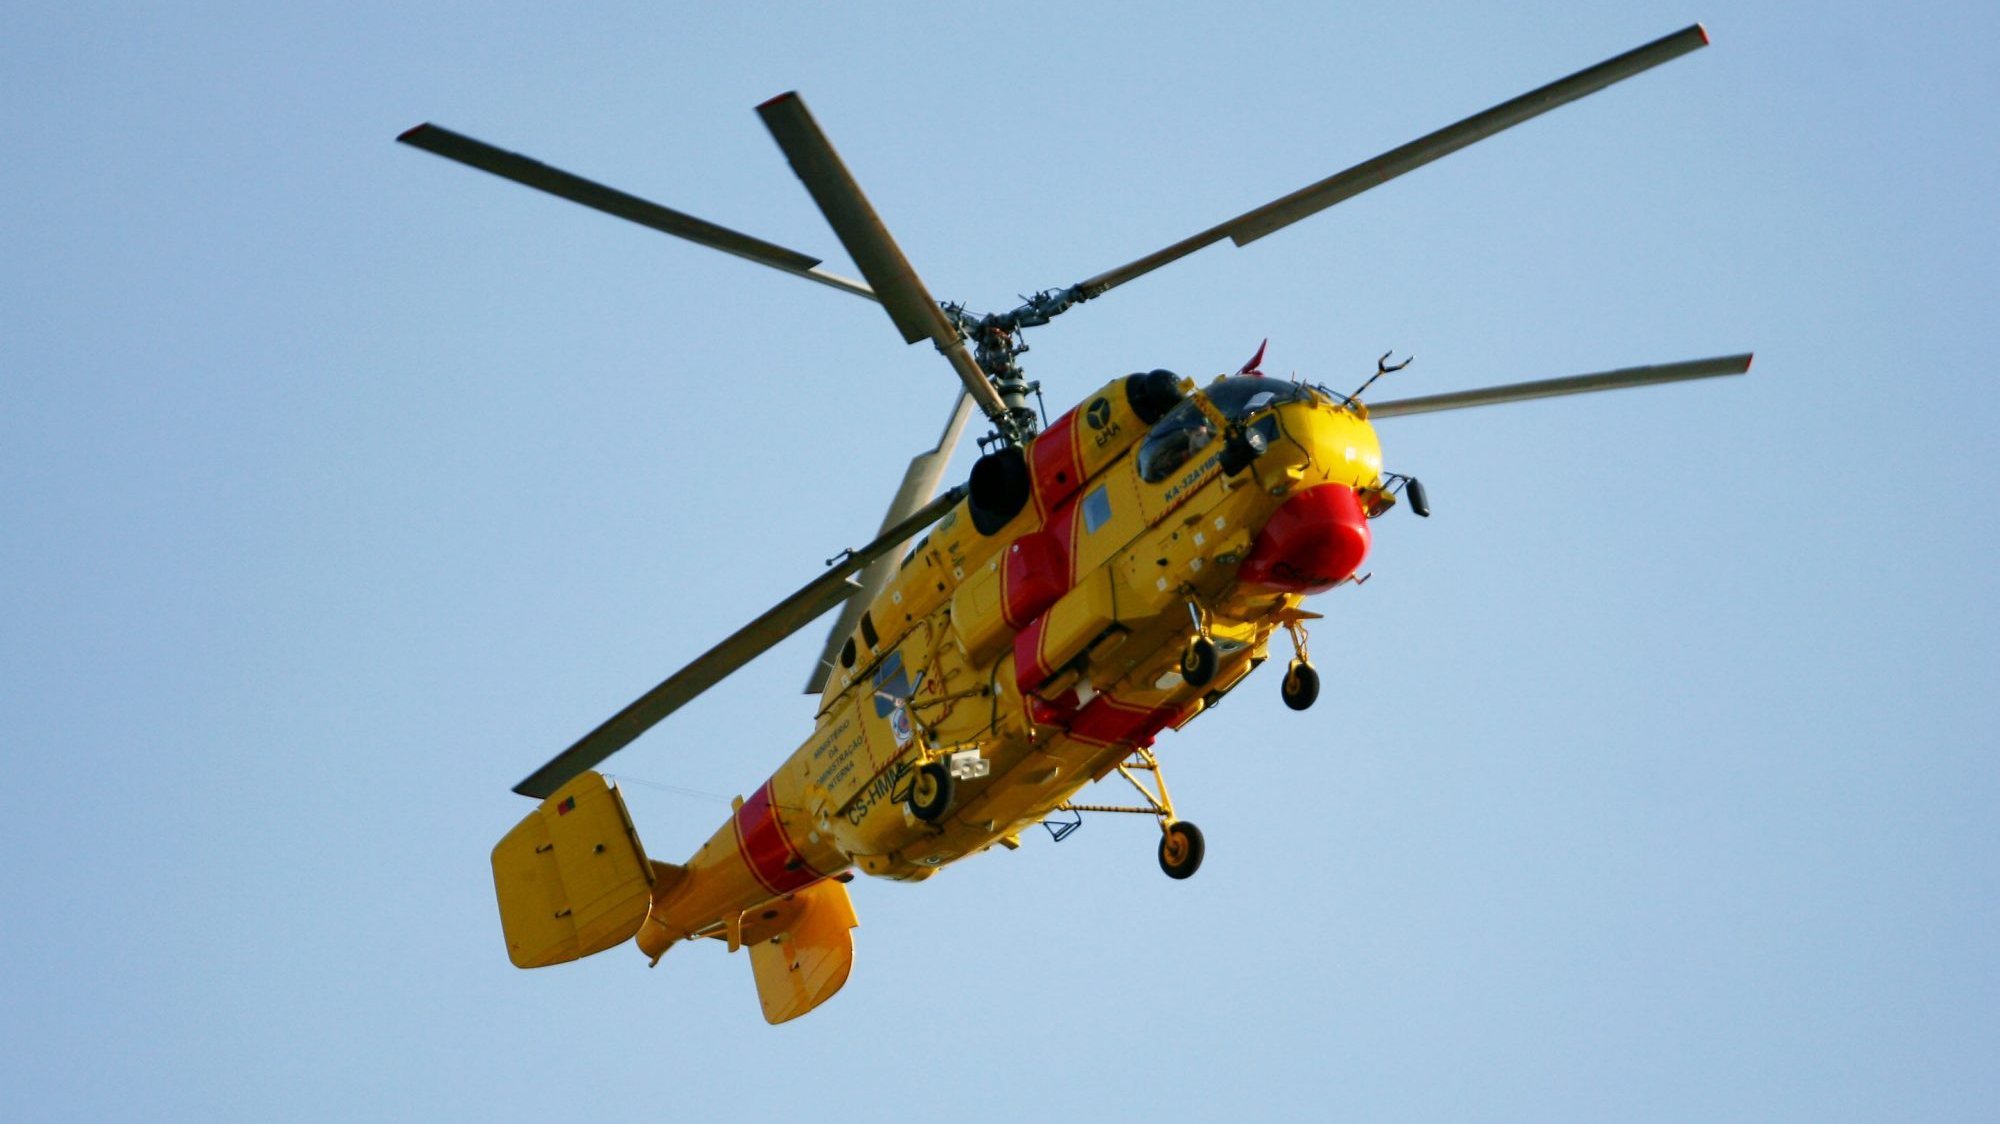 Helicópteros Kamov oferecidos há mais de um ano continuam “em solo nacional”